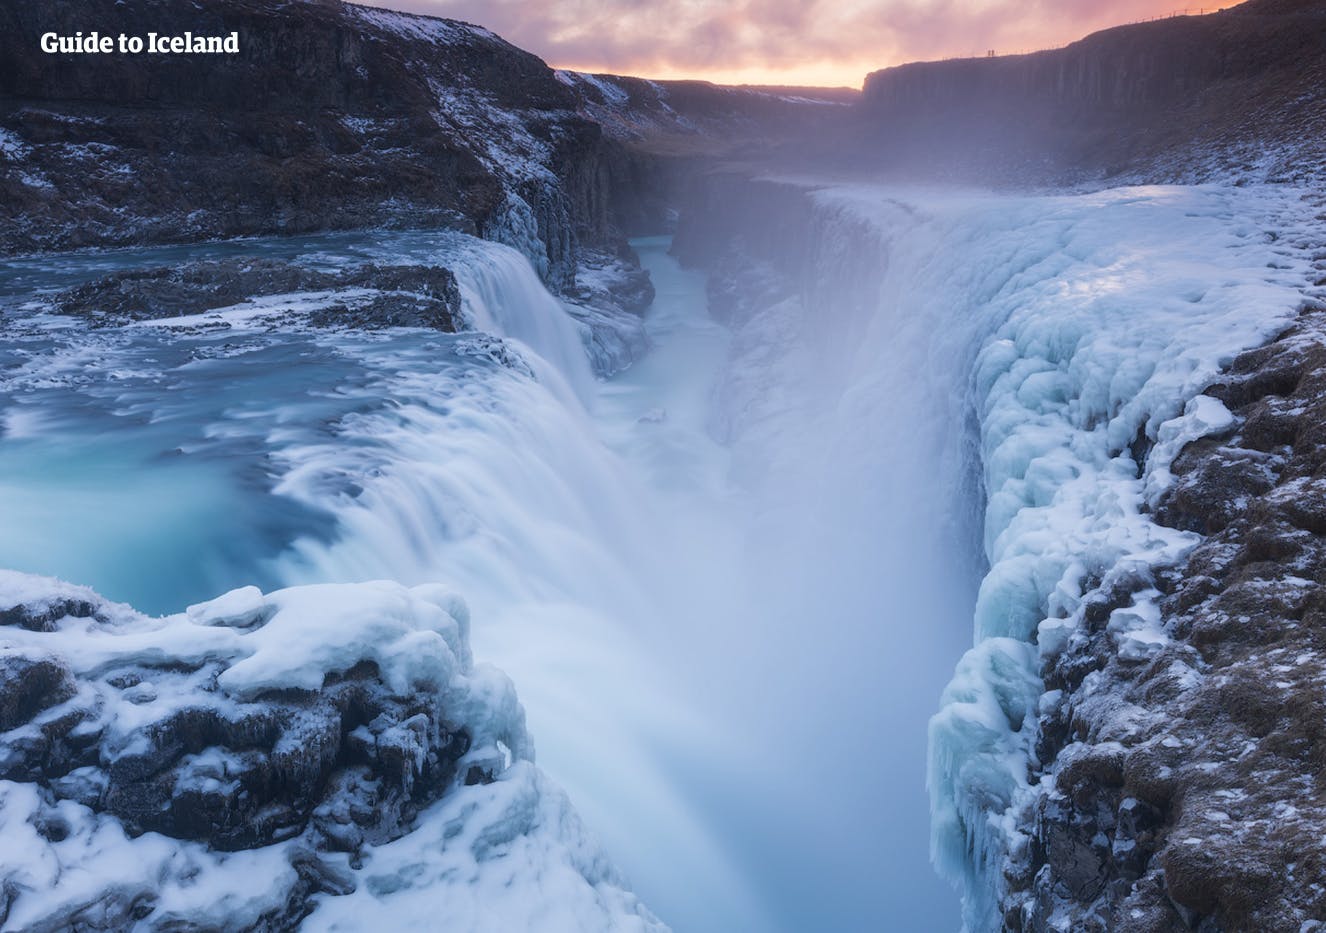 Der mächtige Gullfoss-Wasserfall bietet einen atemberaubenden Anblick, und die umliegenden gefrorenen Landschaften im Winter machen ihn noch attraktiver